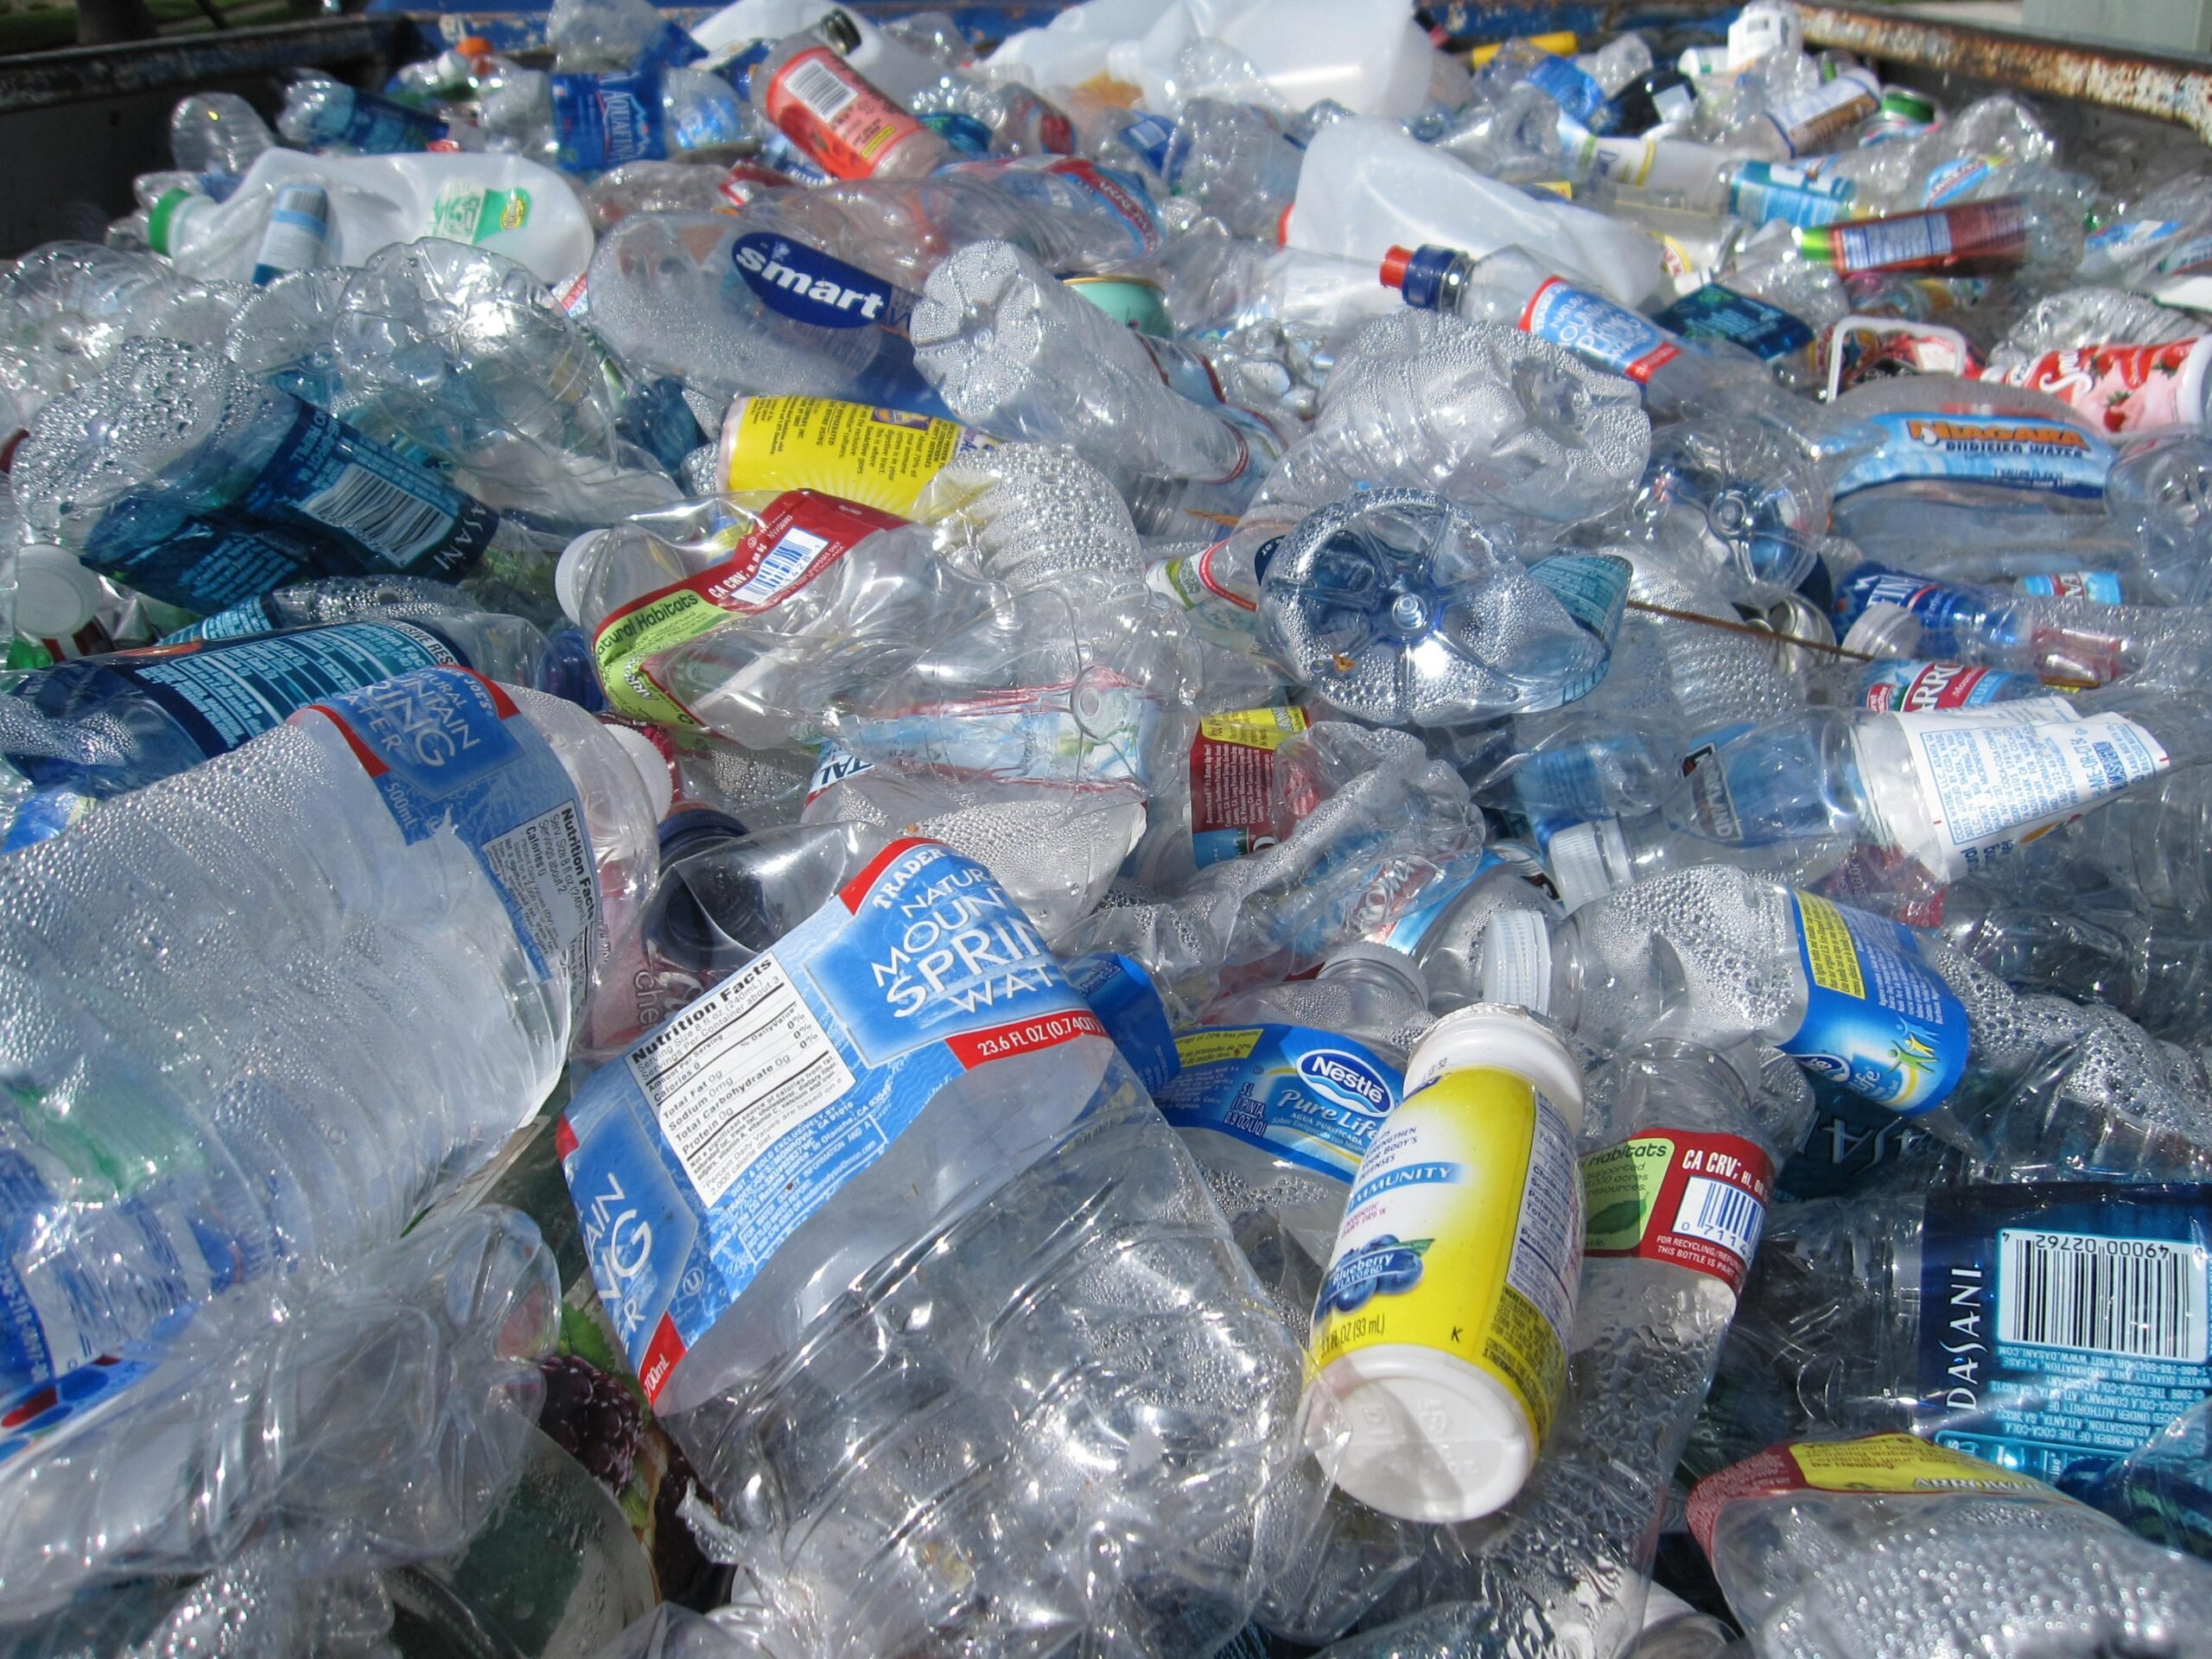 Thermo-chemische recycling kan de manier veranderen waarop we tegen plastic afval aankijken